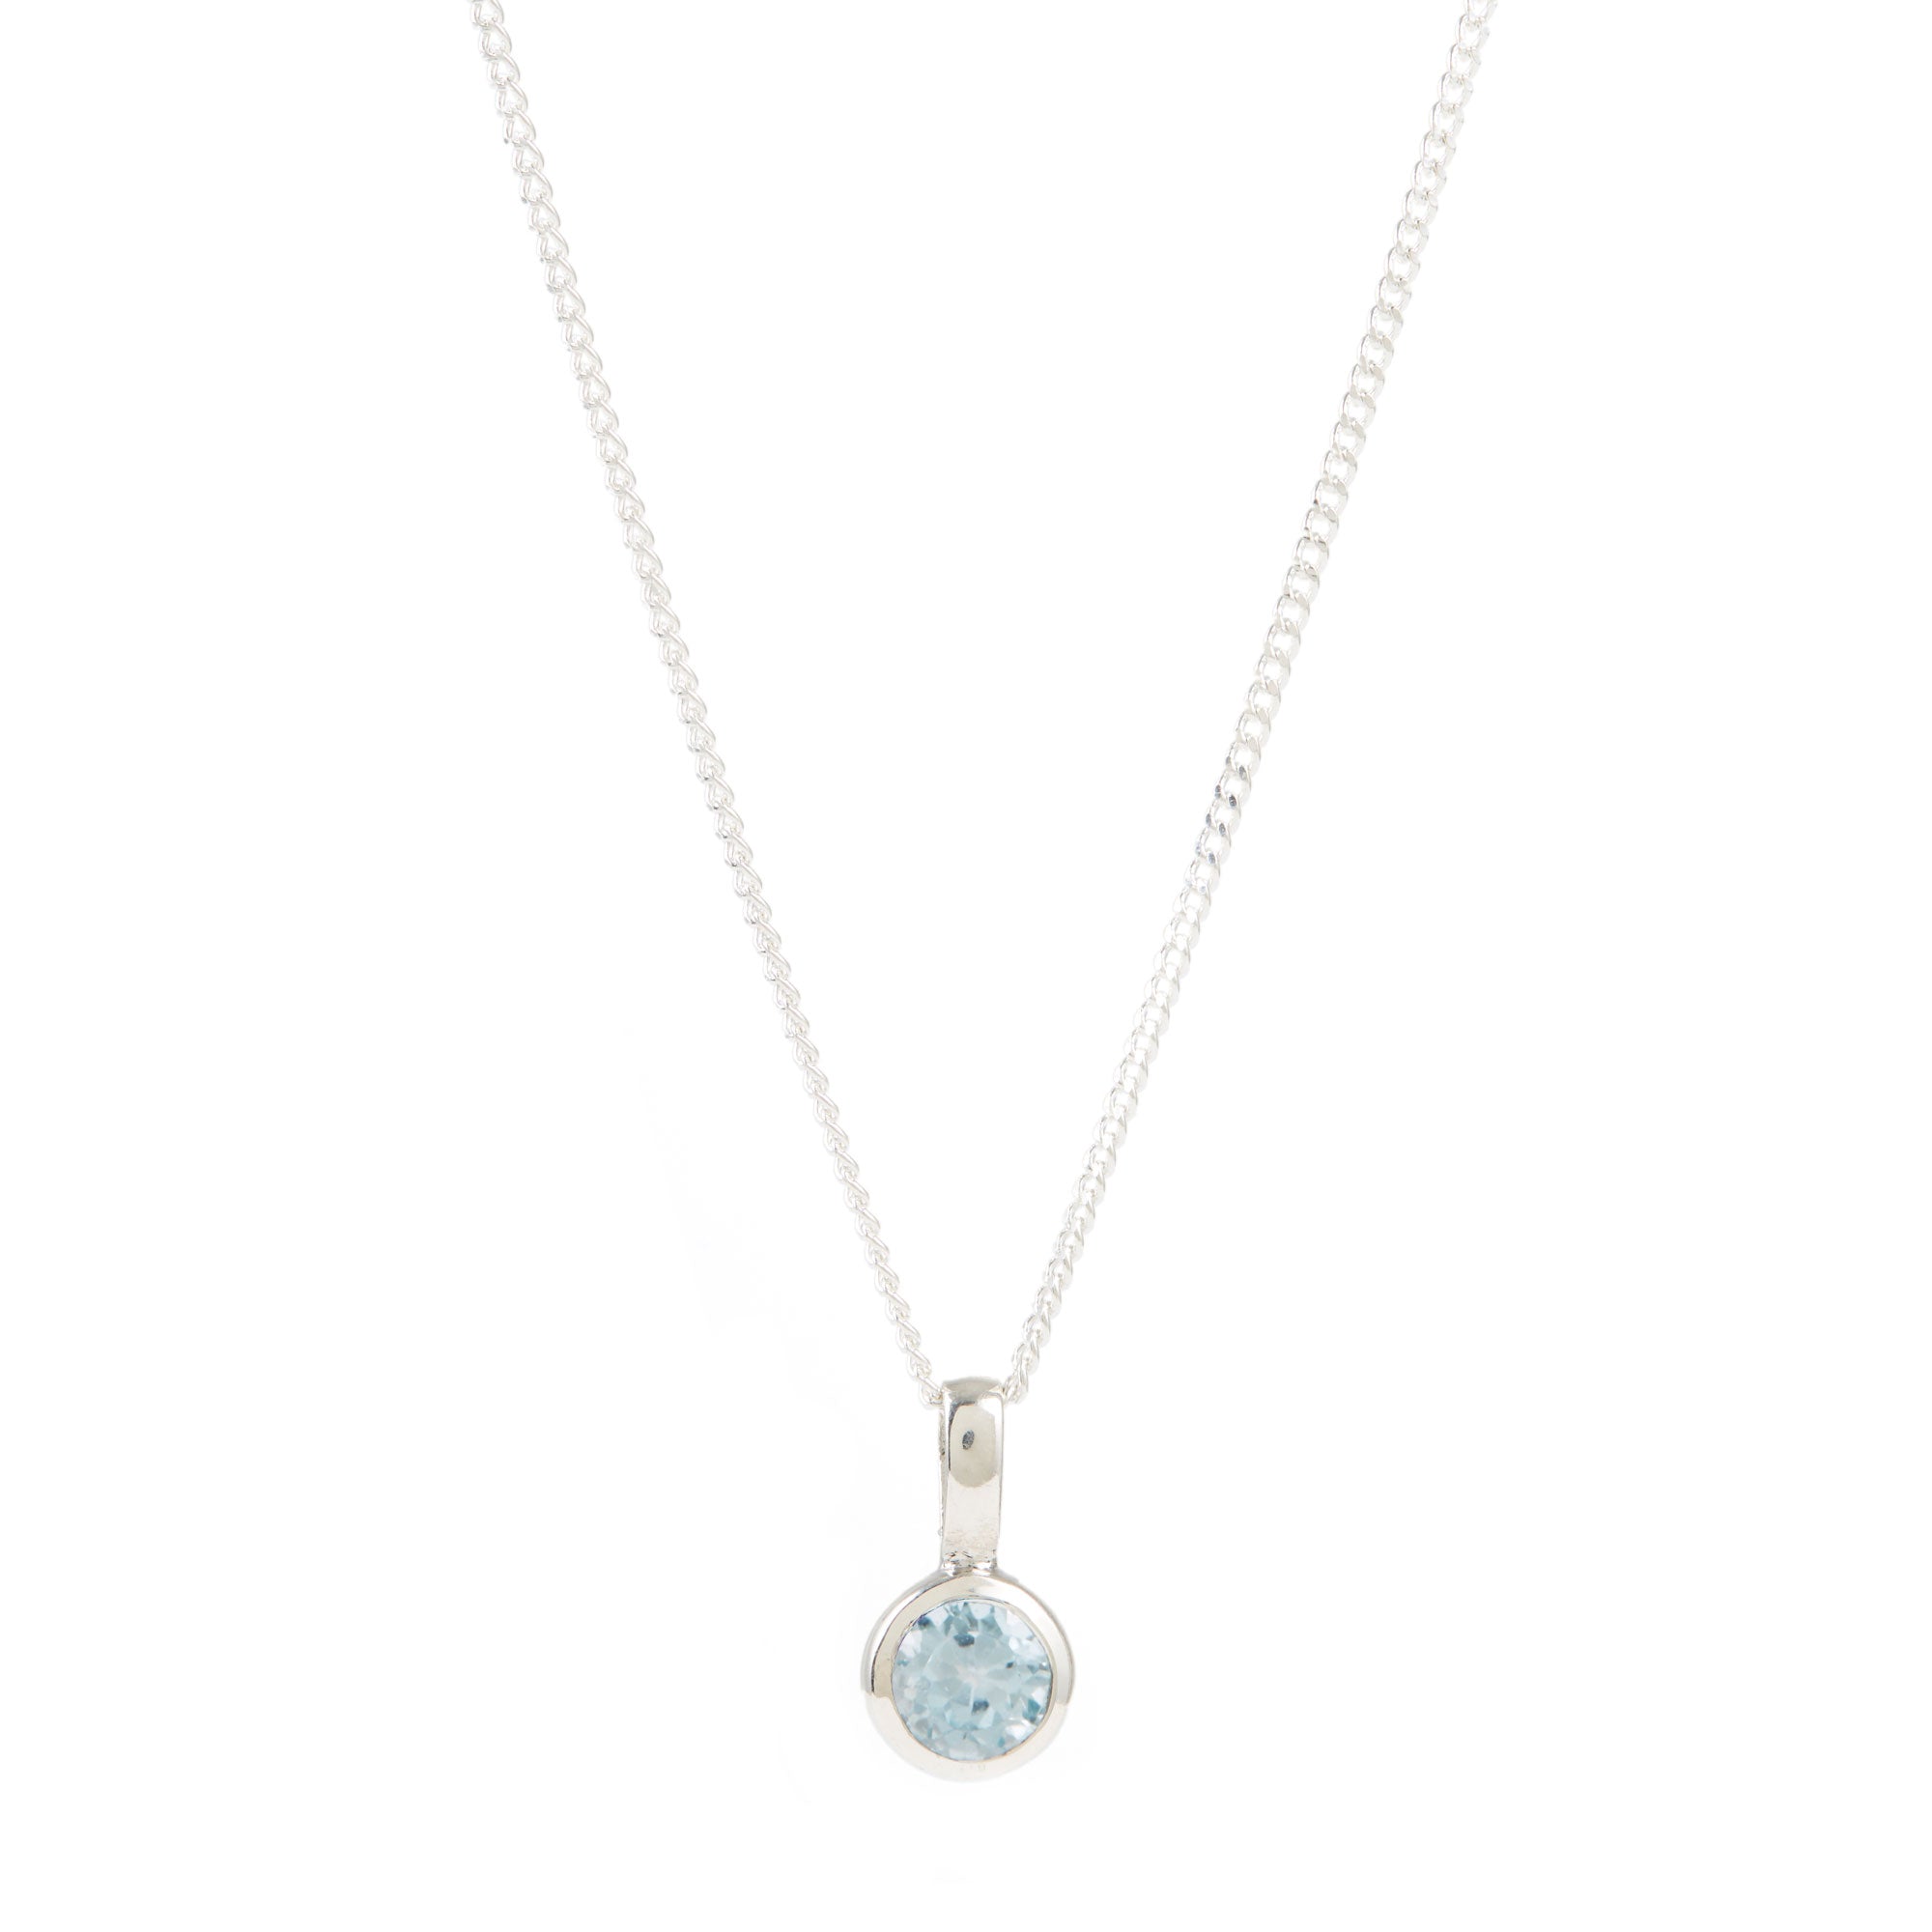 November Birthstone Charm Necklace - Blue Topaz